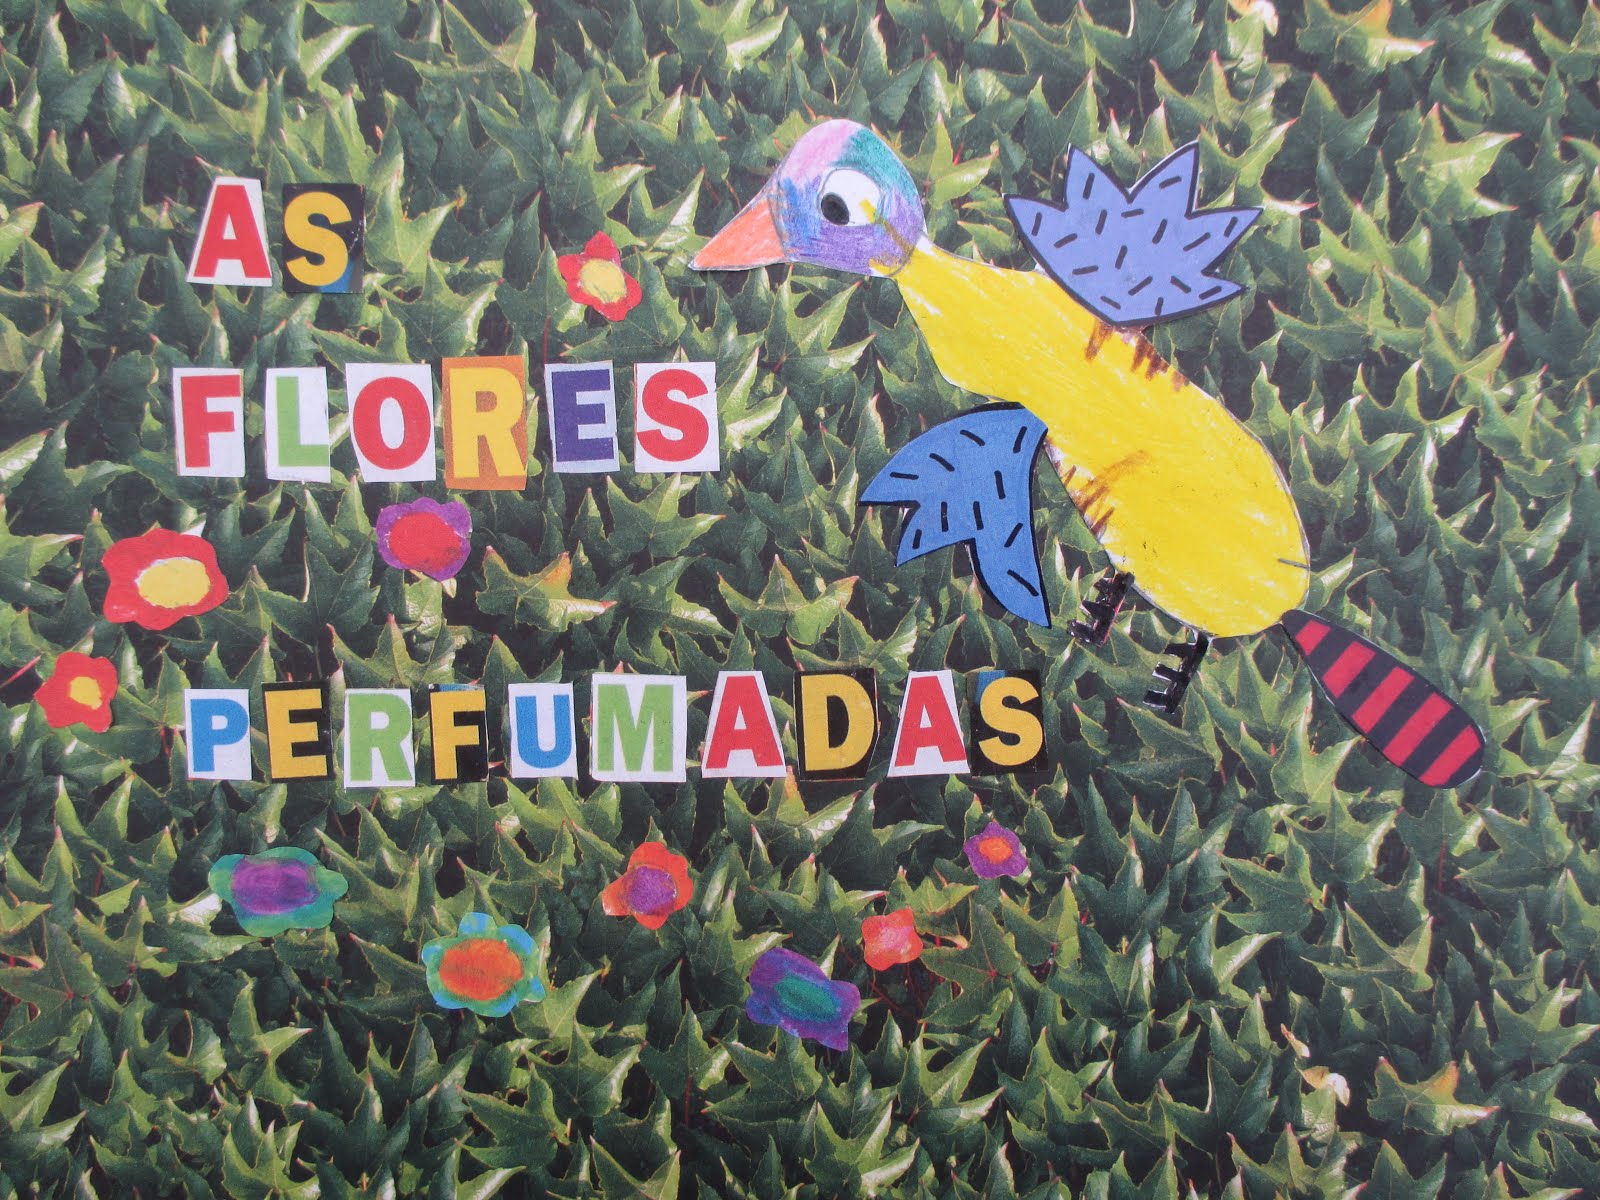 "AS FLORES PERFUMADAS"